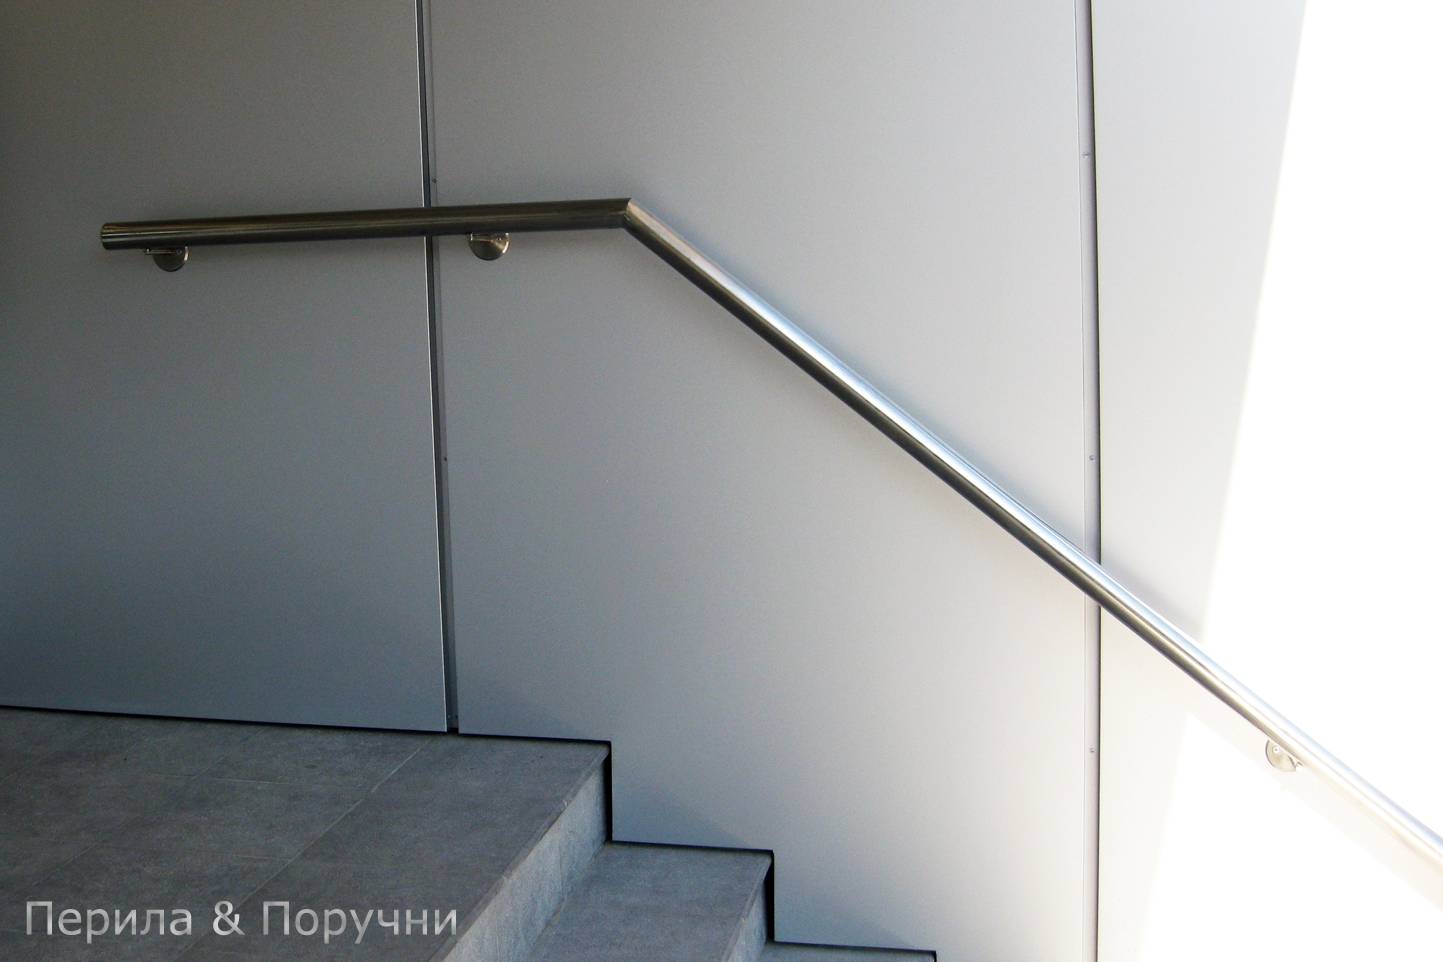 Перила для лестниц: установка, эксплуатация, особенности